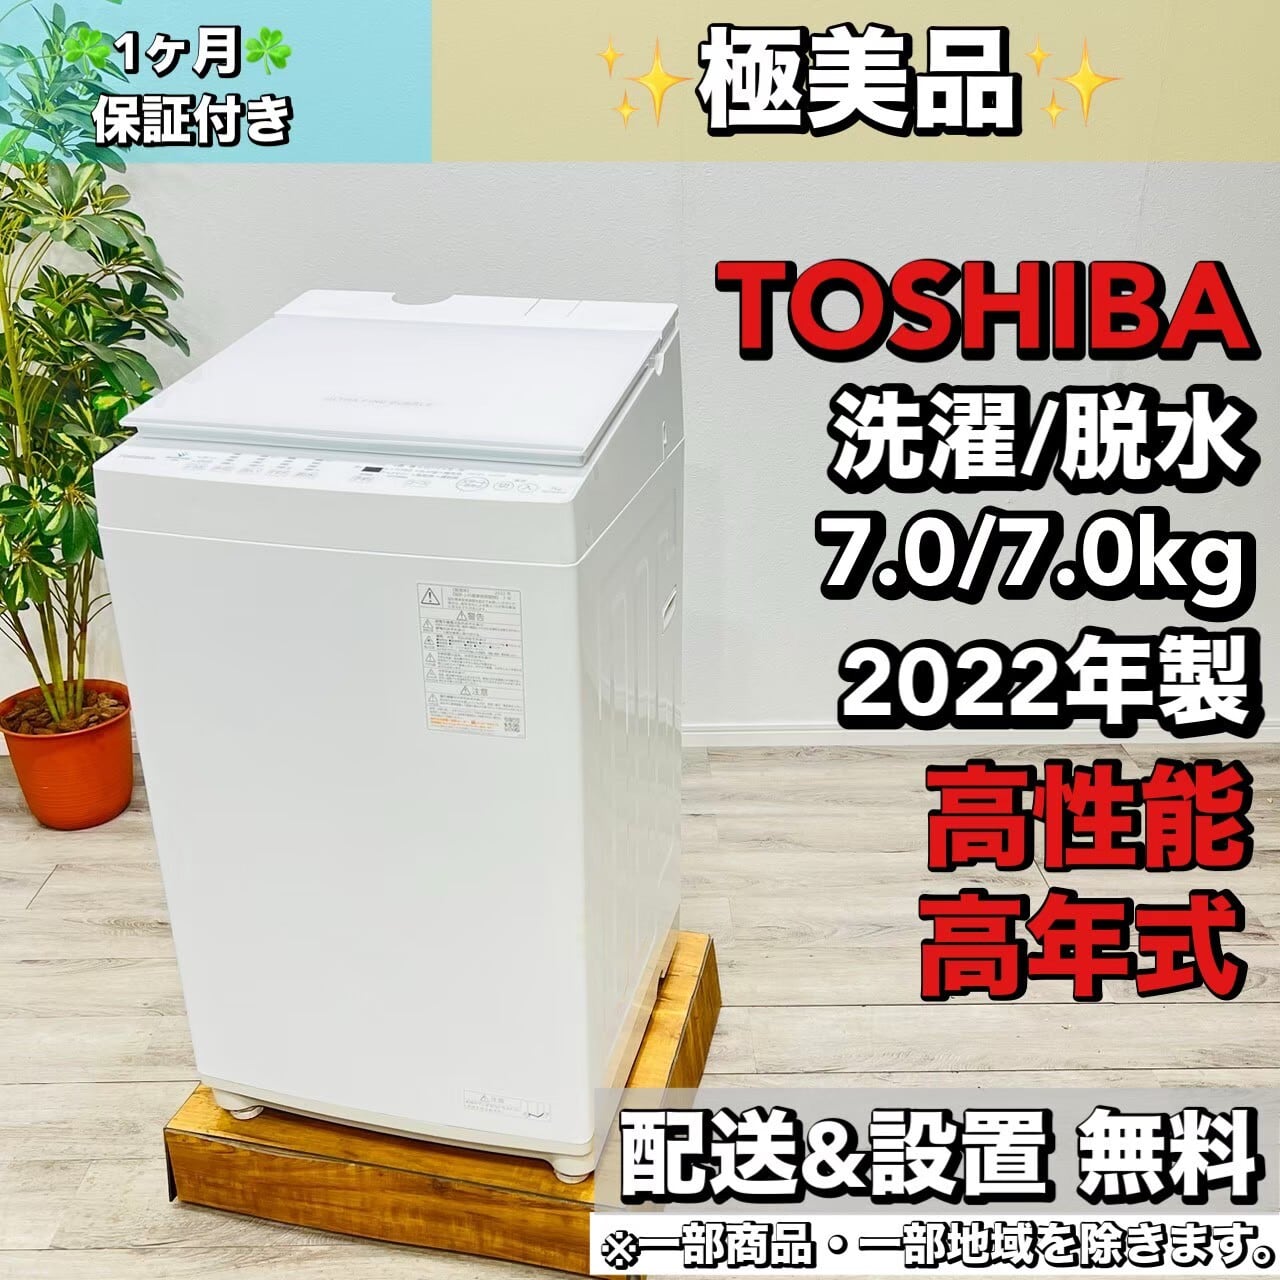 関西リユース本舗♦️TOSHIBA a1724 洗濯機 7.0kg 2022年製 20♦️